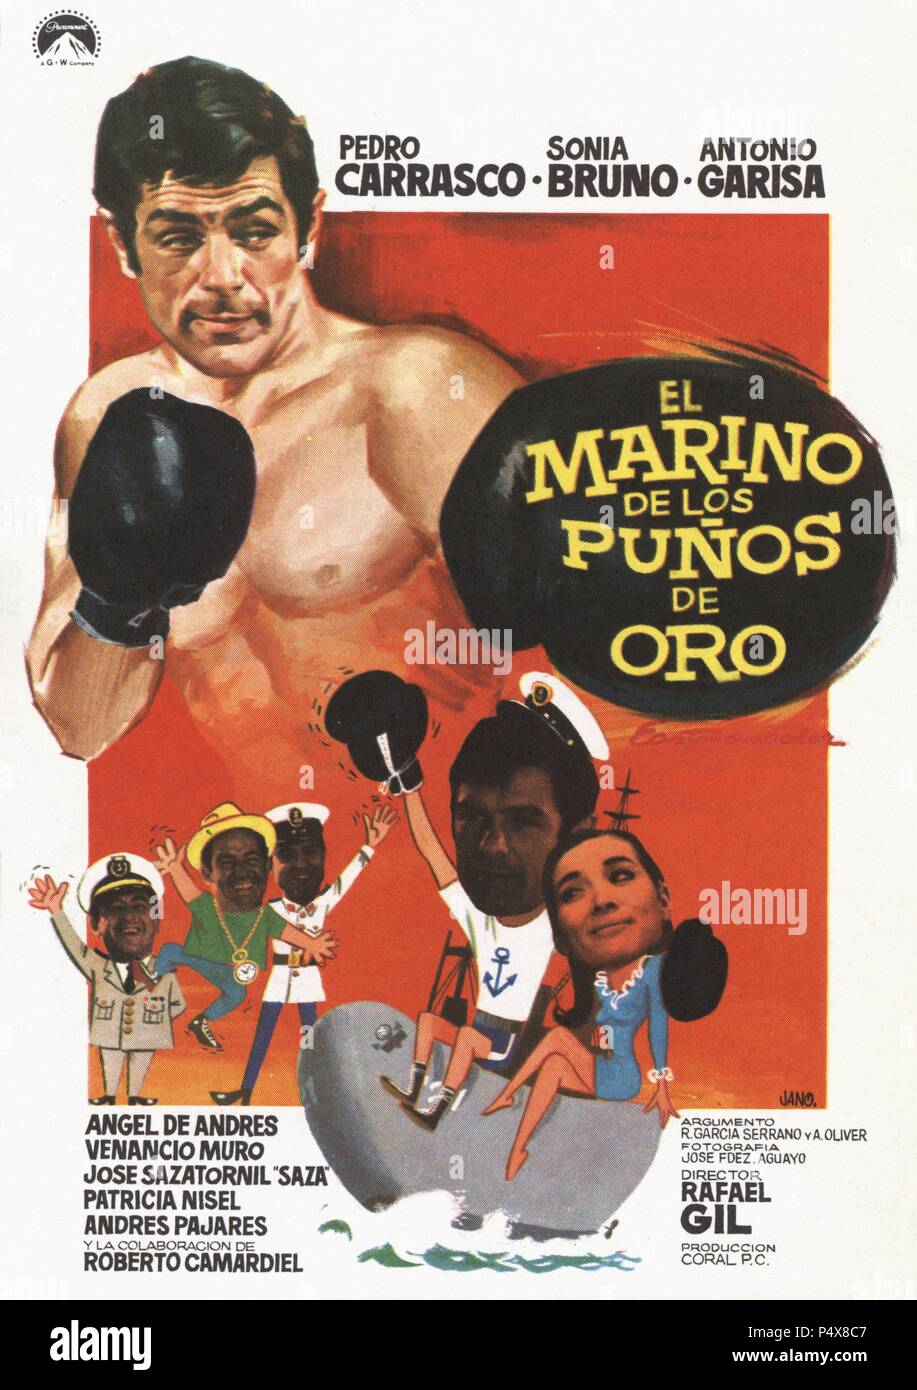 Cartel de la película El Marino de los Puños de Oro, ilustrado por Jano, con Pedro Carrasco y Sonia Bruno, dirigda por Rafael Gil. España, 1968. Stock Photo